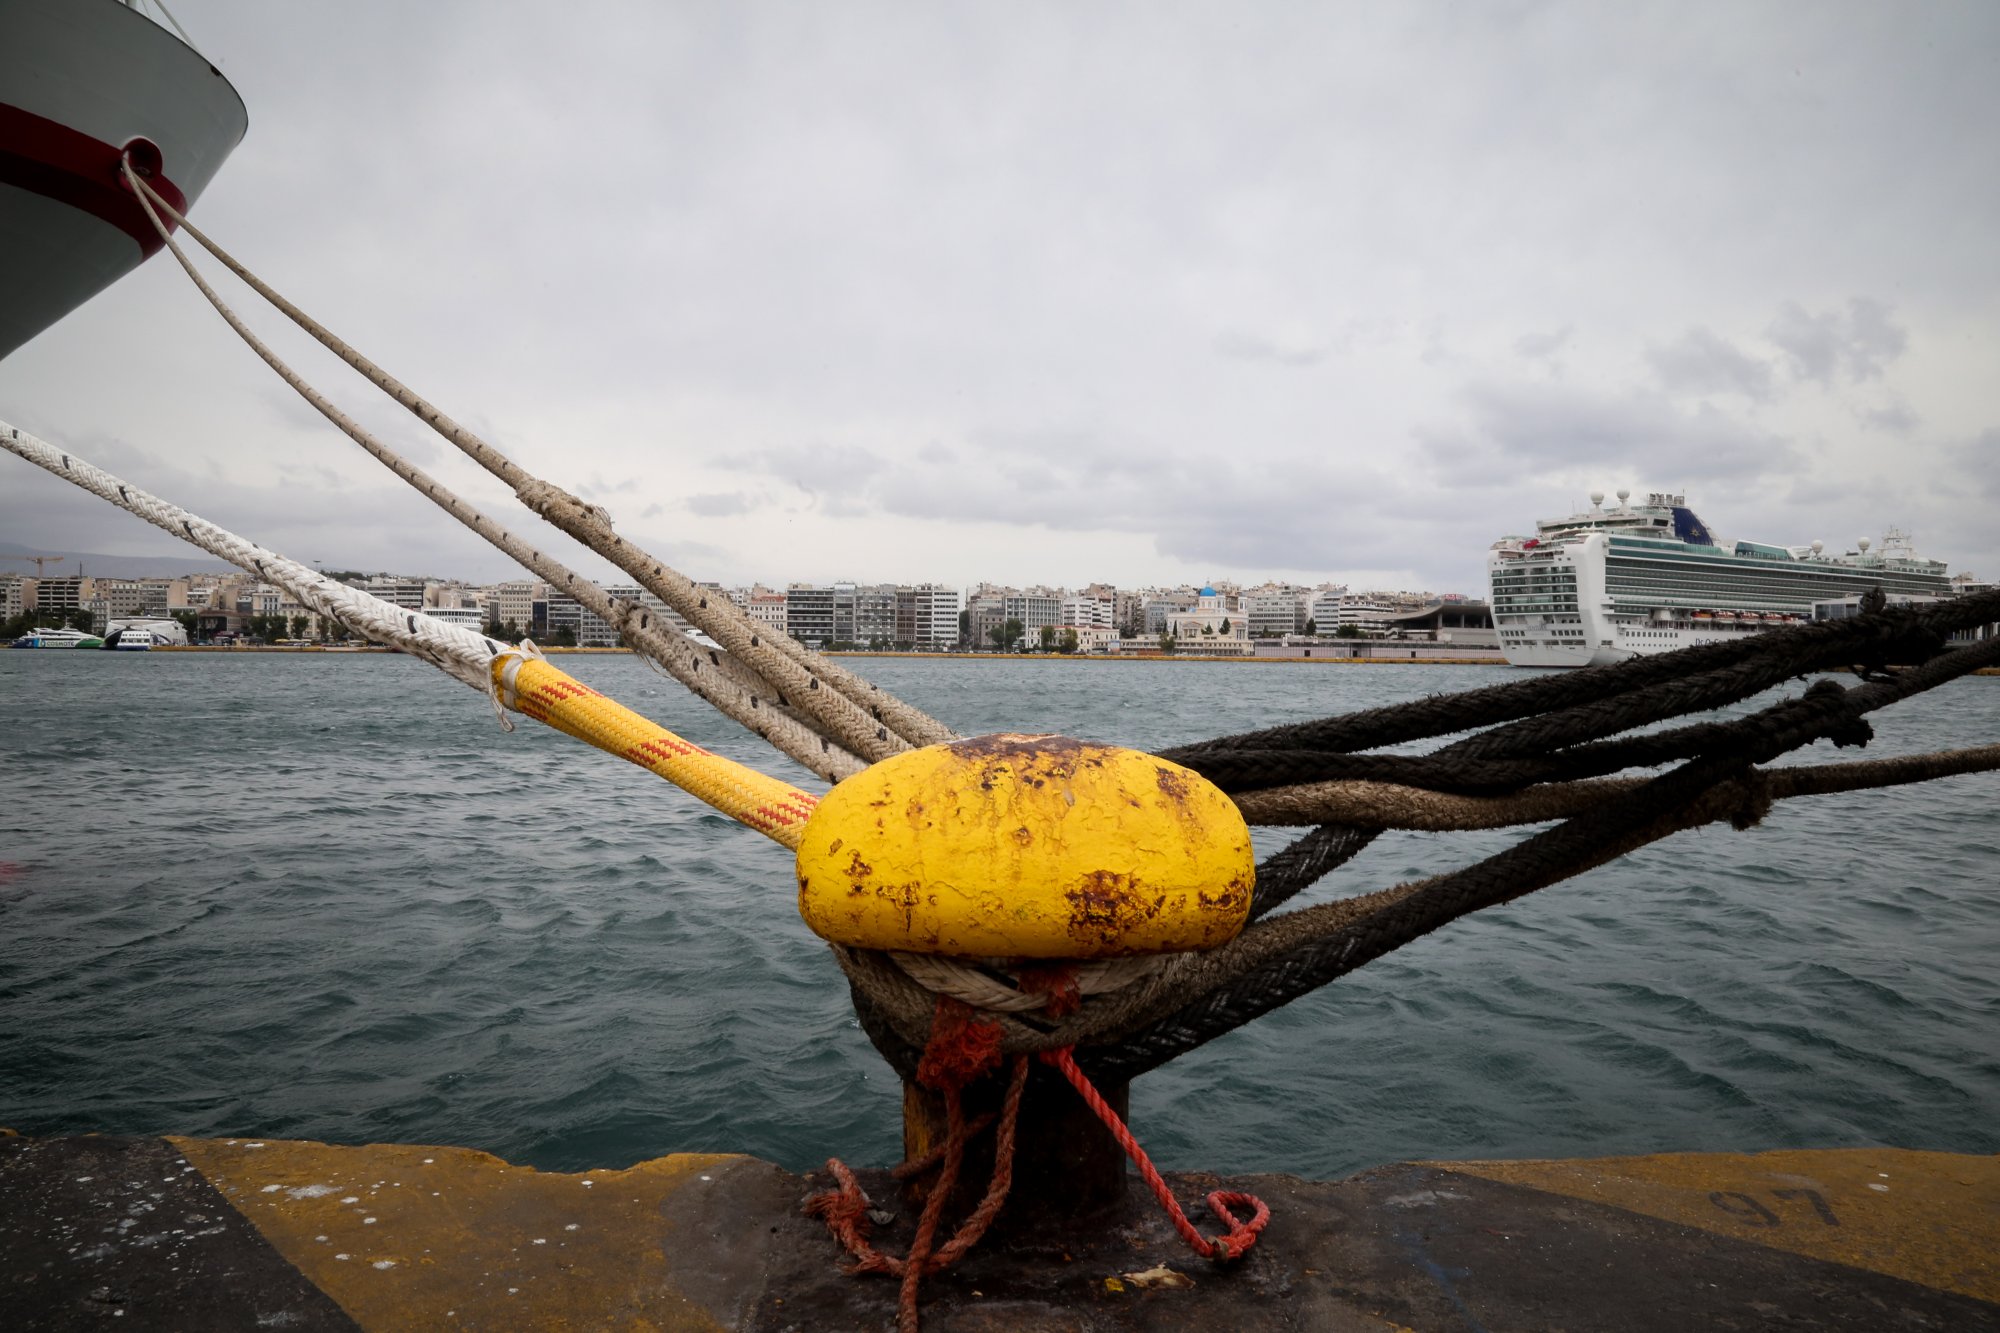 Δεμένα τα πλοία στα λιμάνια λόγω κακοκαιρίας – Θυελλώδεις άνεμοι 9 μποφόρ